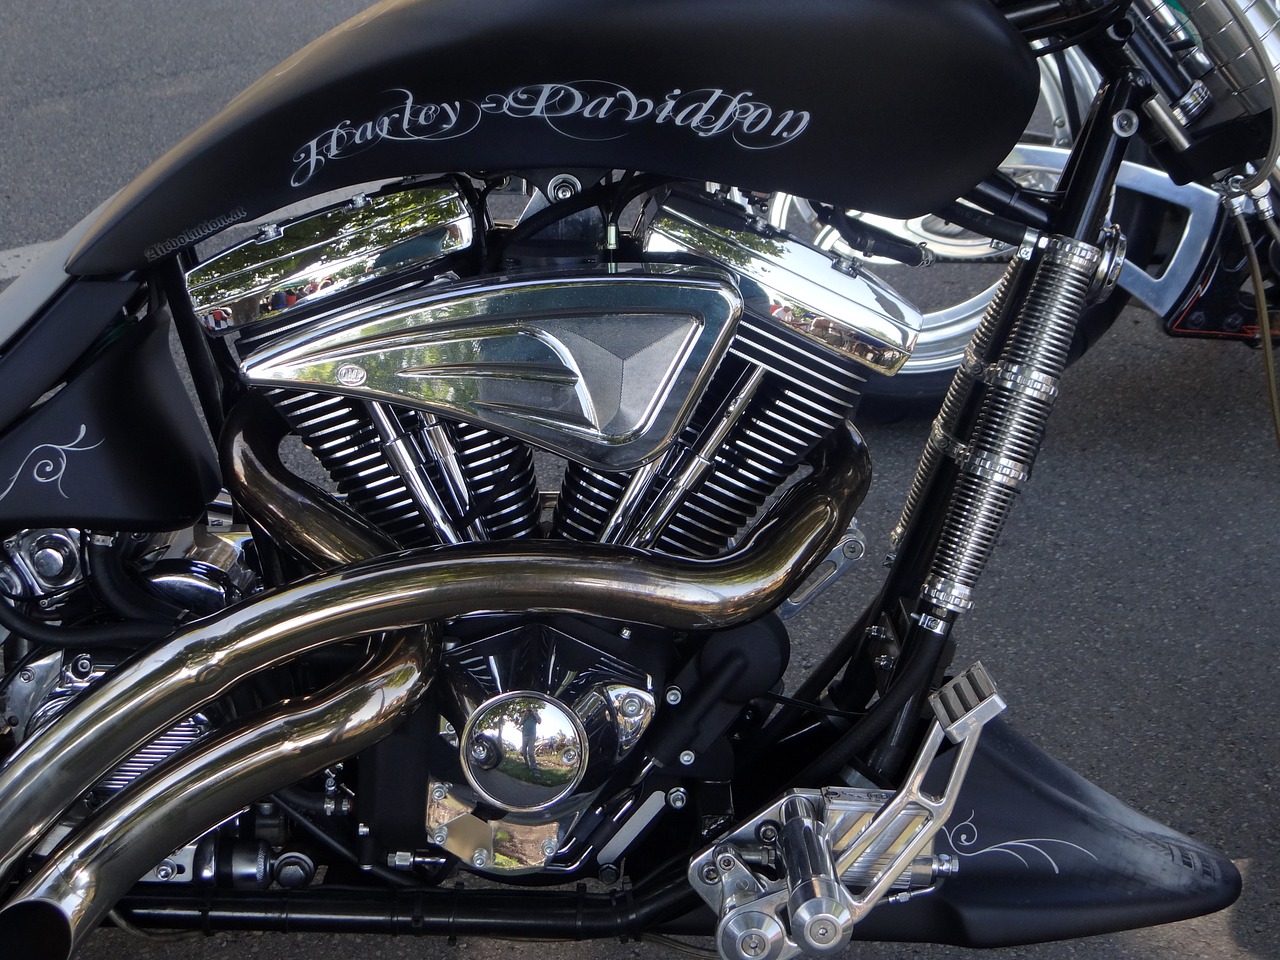 harley davidson motorcycle motor free photo